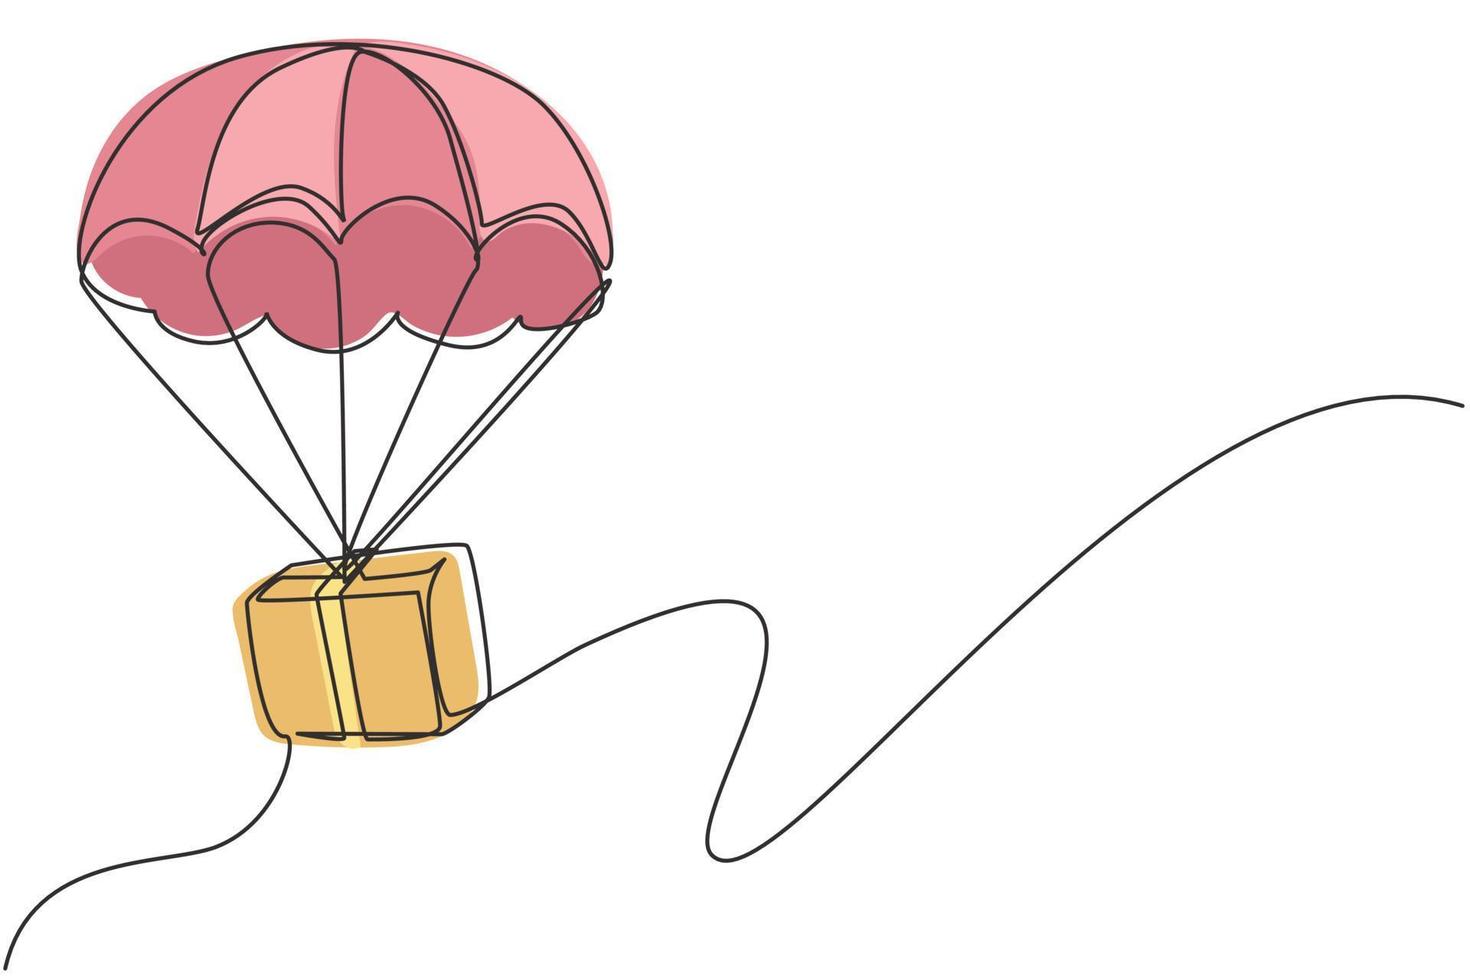 einzelnes fortlaufendes Strichzeichnungspaket fliegt mit einem Fallschirm durch den Himmel. Online-Lieferservice. schnelle lieferung paketkonzept. dynamische eine linie zeichnen grafikdesign vektorillustration vektor